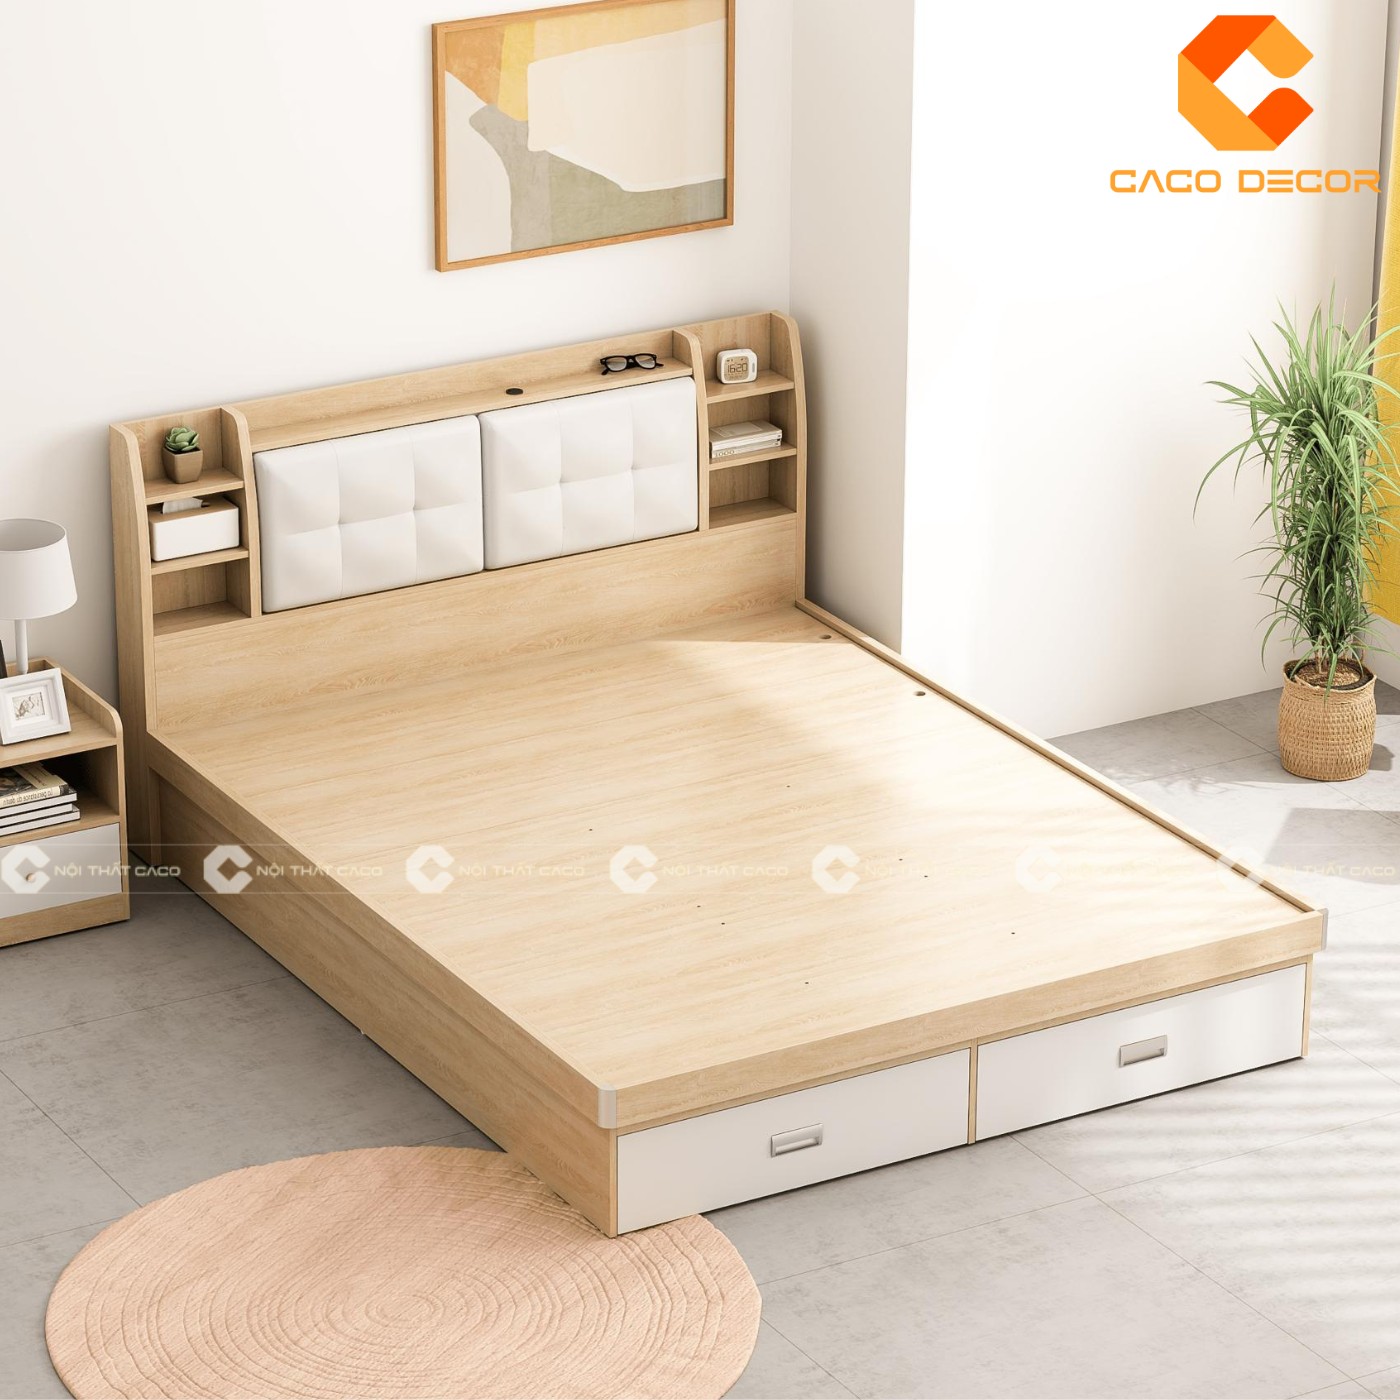 Giường ngủ gỗ công nghiệp đẹp, chất lượng với giá tốt nhất thị trường 11